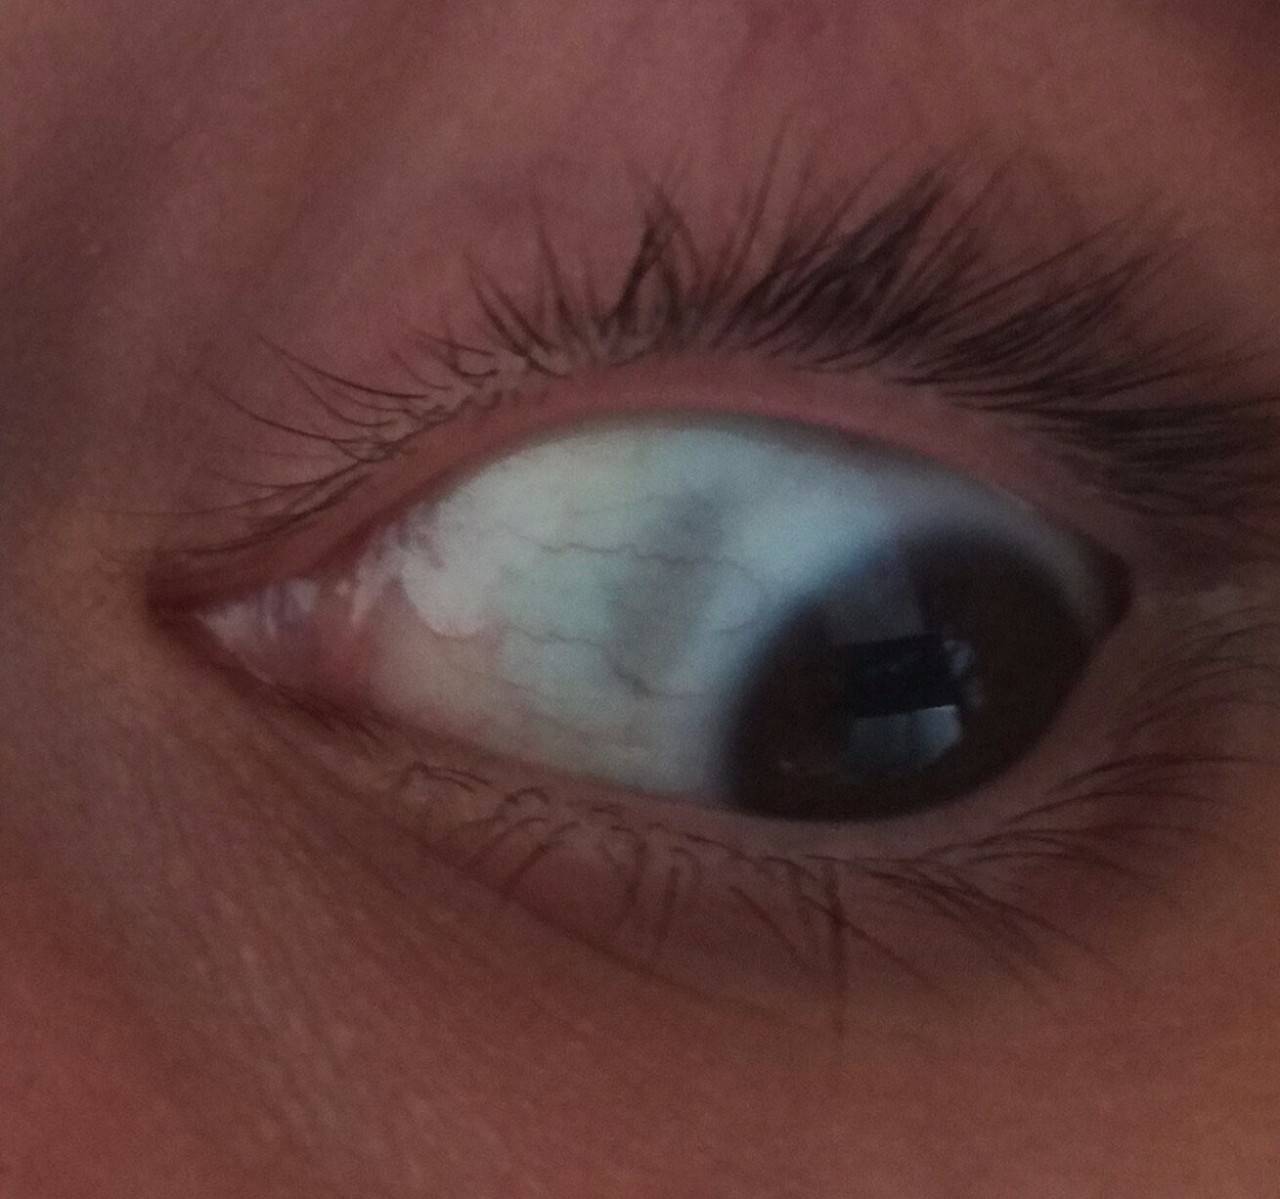 Пятно на белке глаза: причины, лечение, профилактика - "здоровое око"